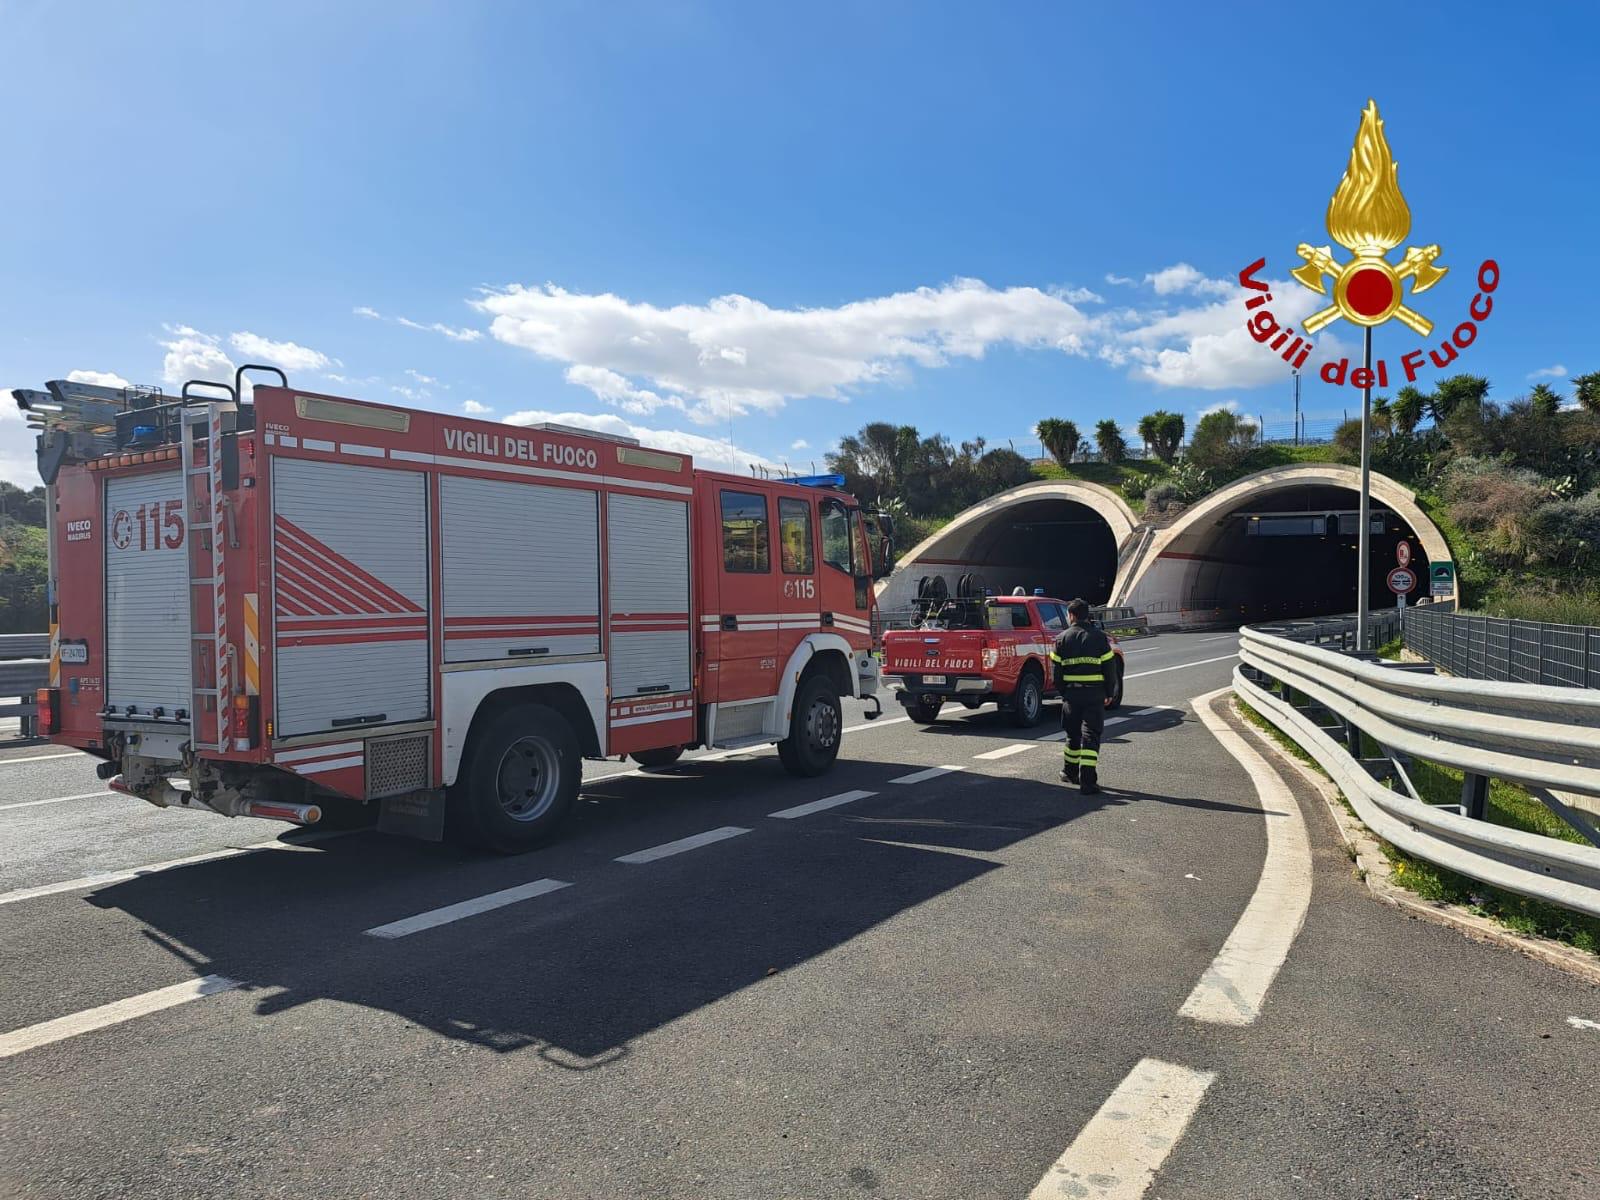 Vigili del fuoco a lezioni di gallerie autostradali